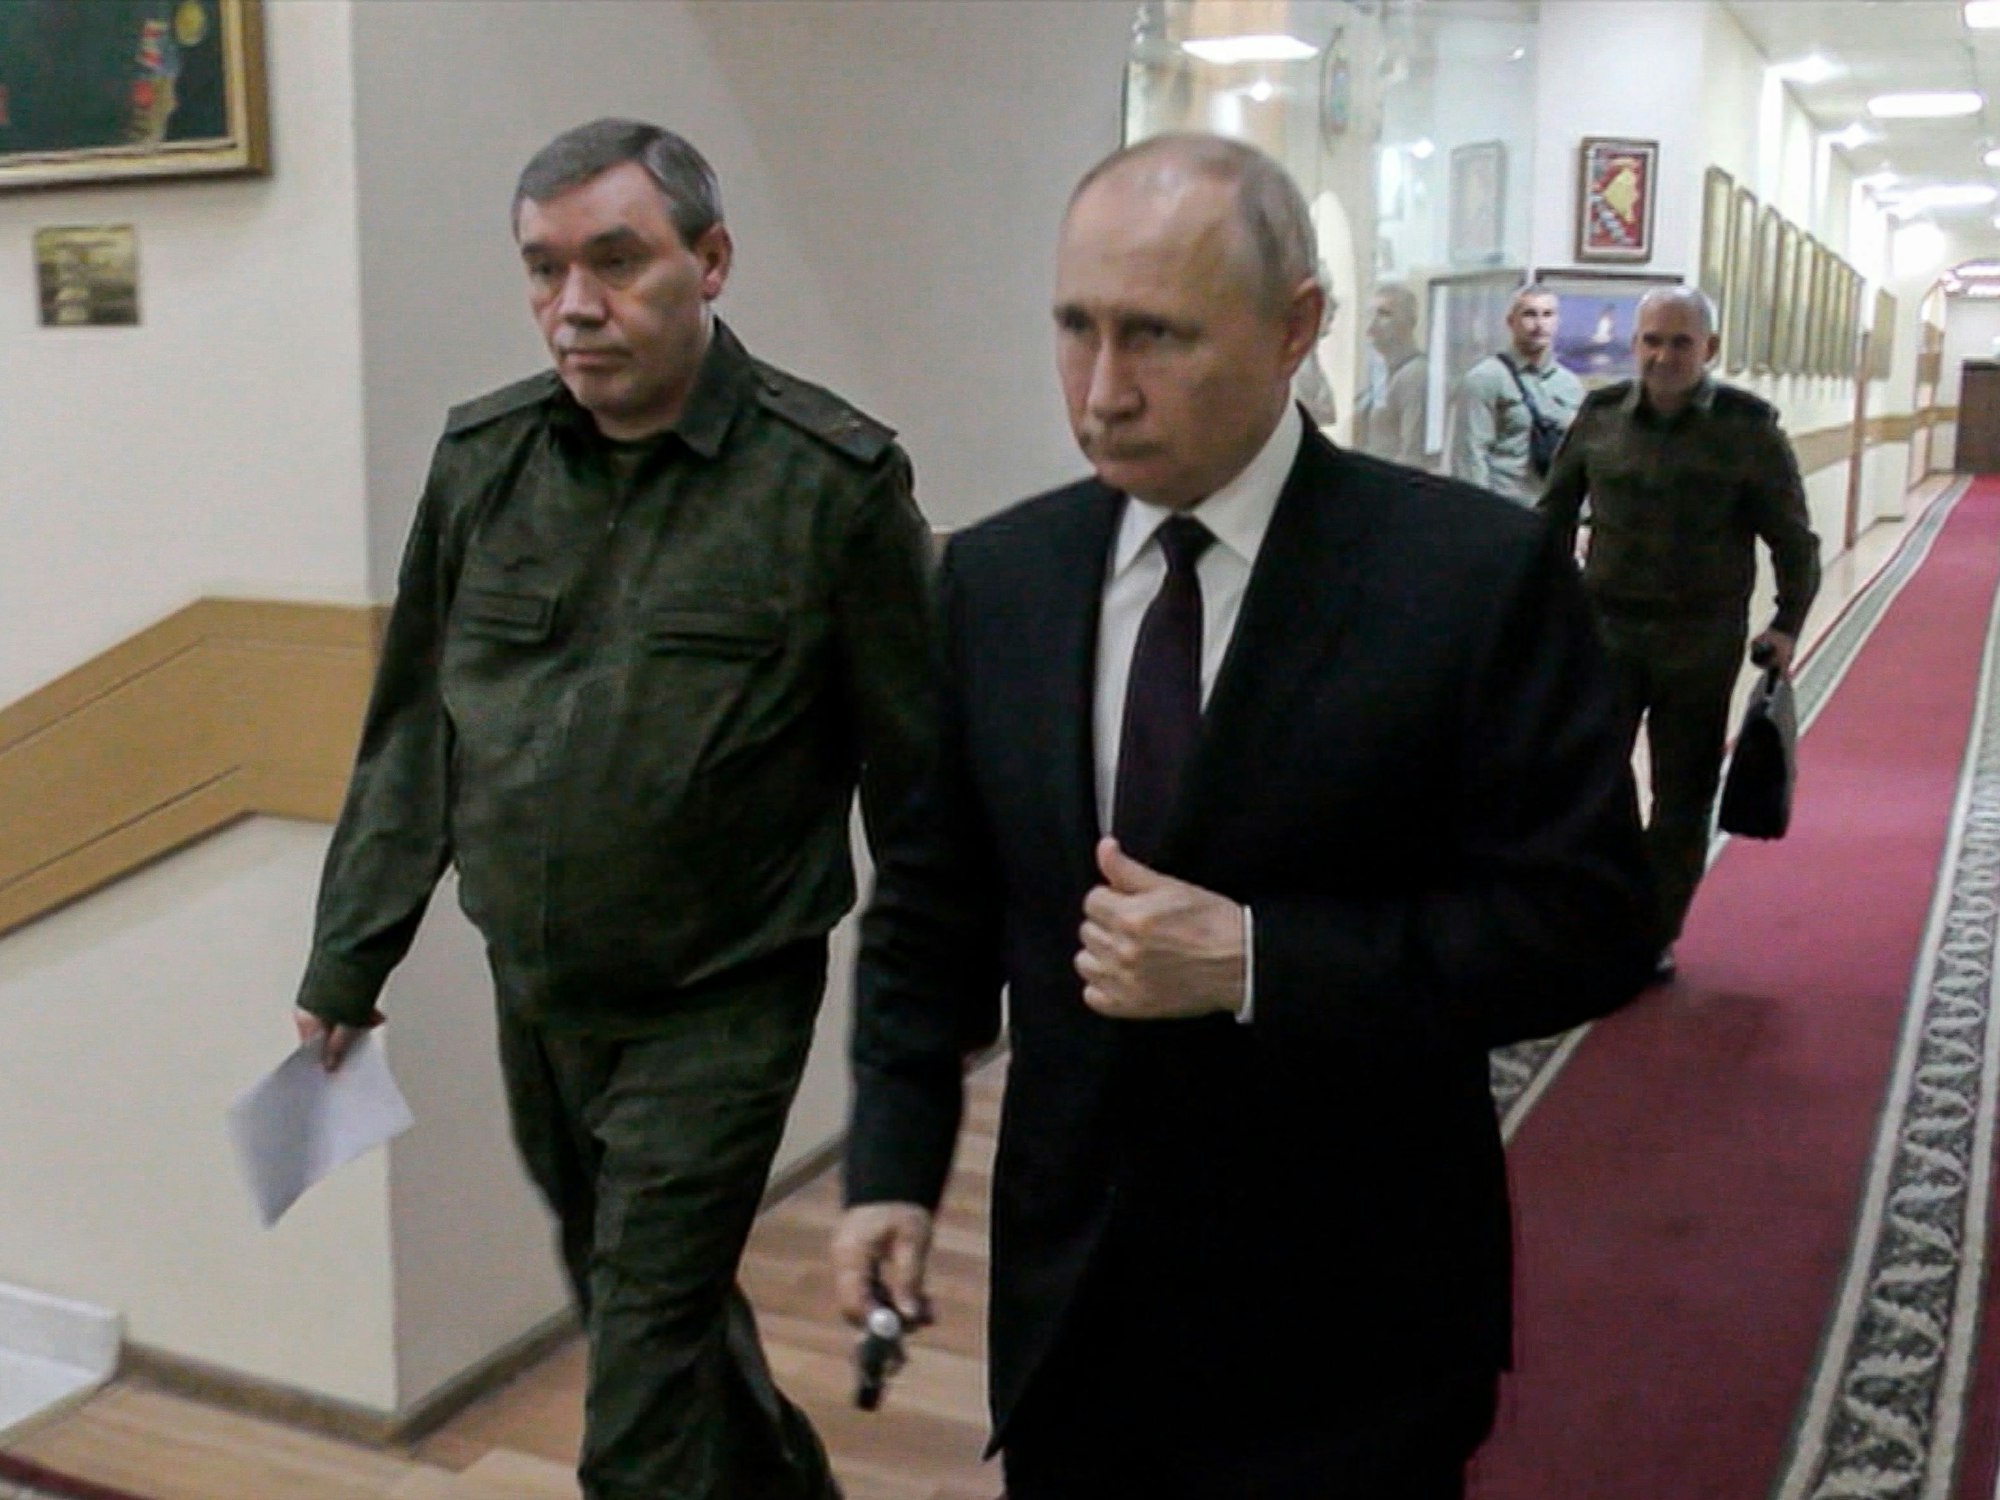 Dieses vom russischen Fernsehen RU-RTR zur Verfügung gestellten Videostandbild zeigt Russlands Präsident Wladimir Putin (r.) und Waleri Gerassimow, seinen Generalstabschef, die zu einem Treffen mit hochrangigen Kommandeuren gehen.